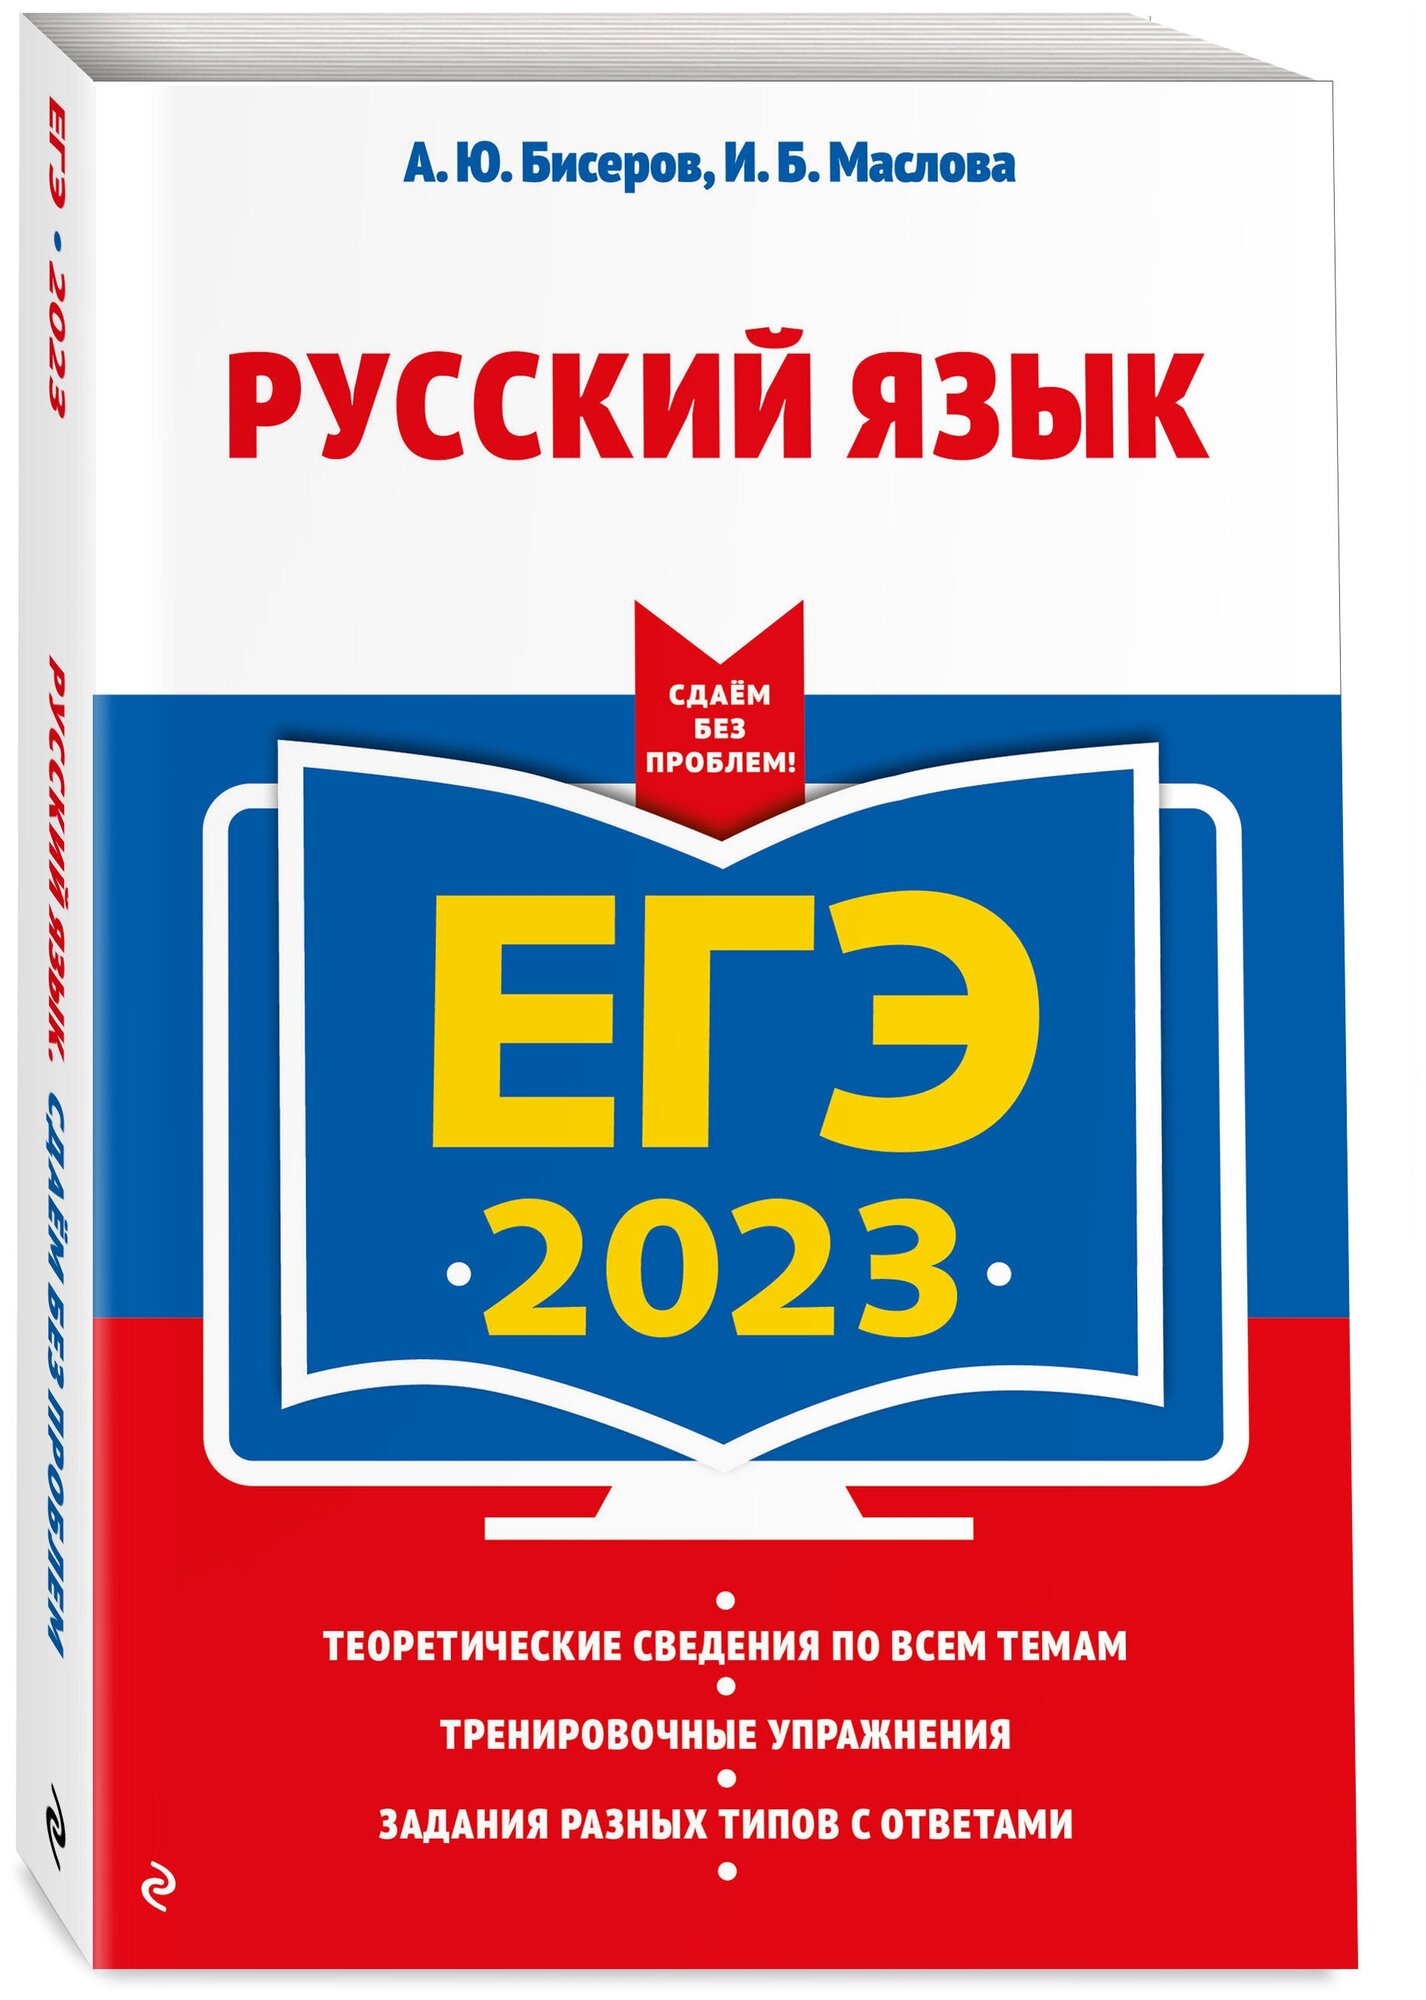 Бисеров А.Ю., Маслова И.Б. "ЕГЭ-2023. Русский язык" типографская